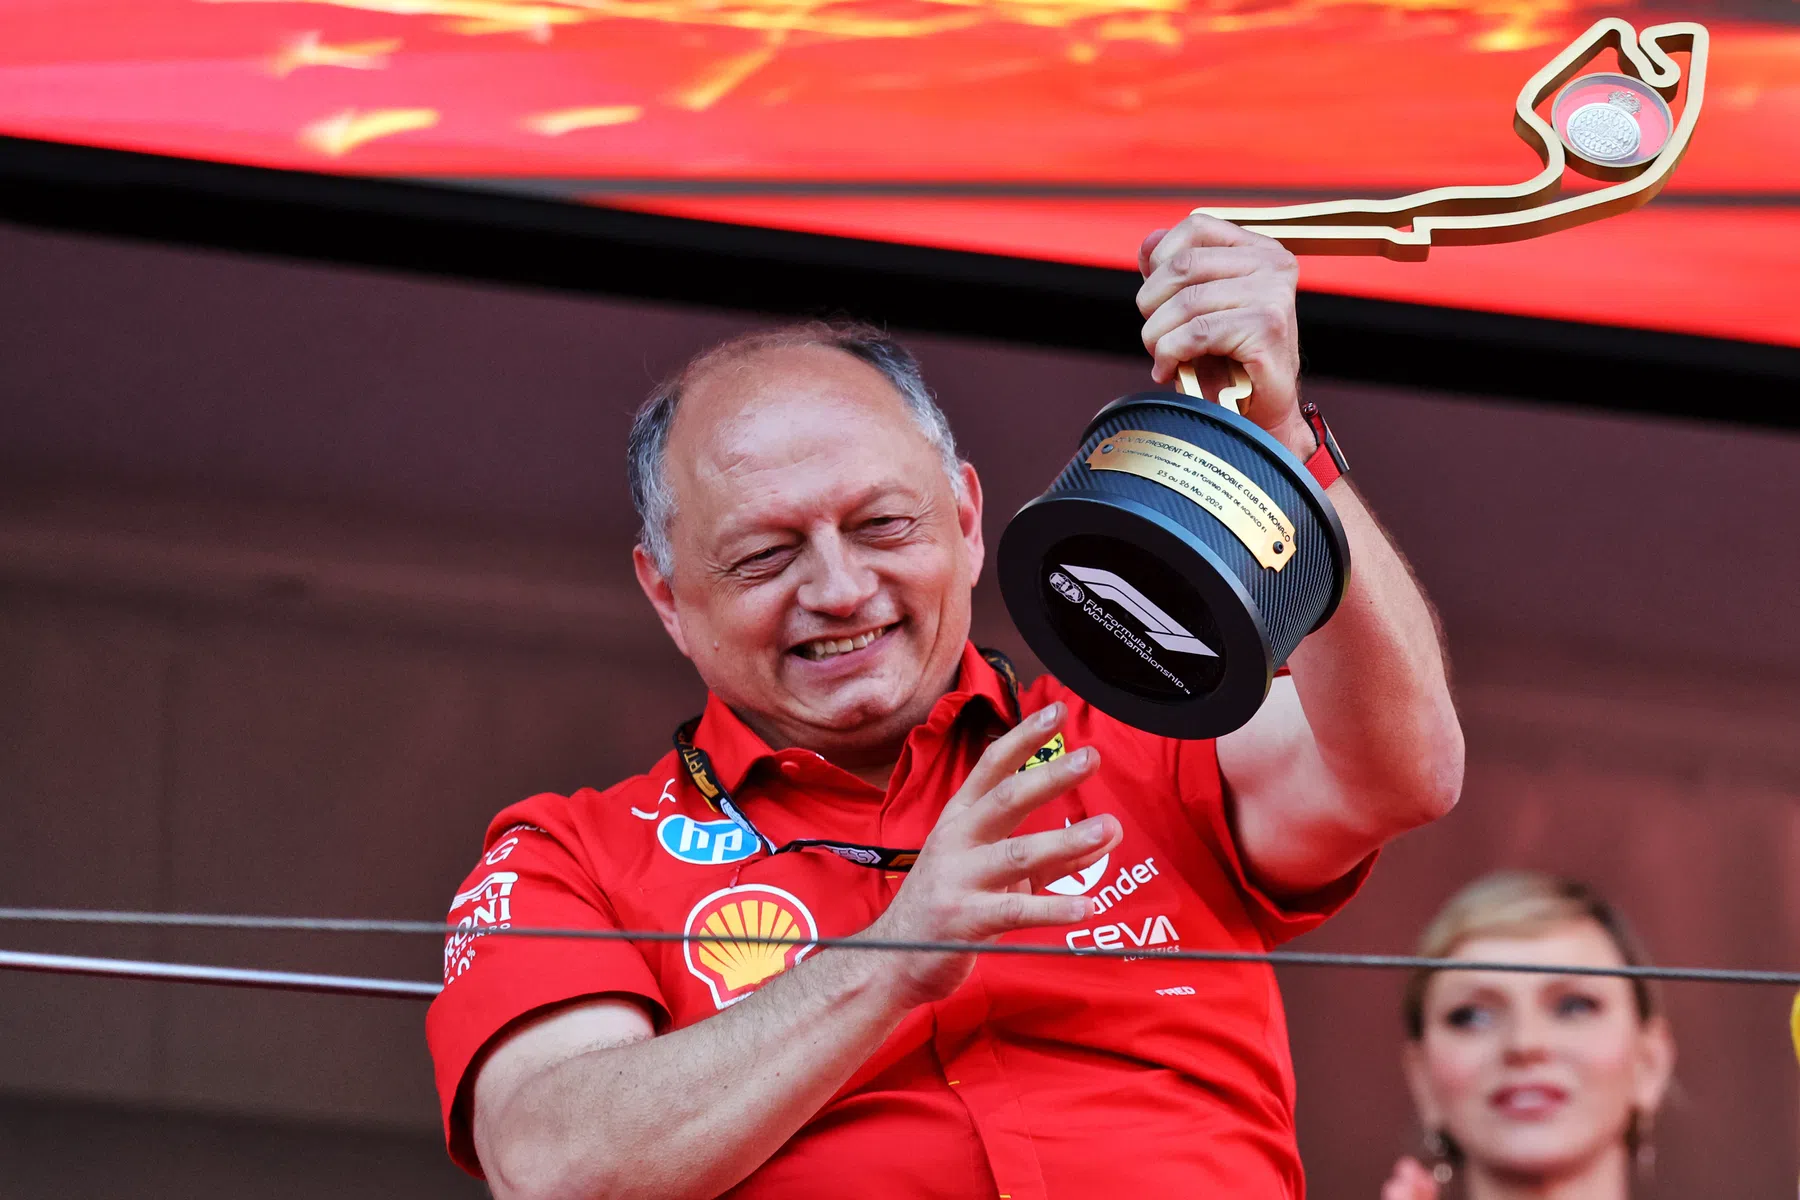 Bernie Collins explique comment Vasseur a apporté plus de confiance à Ferrari